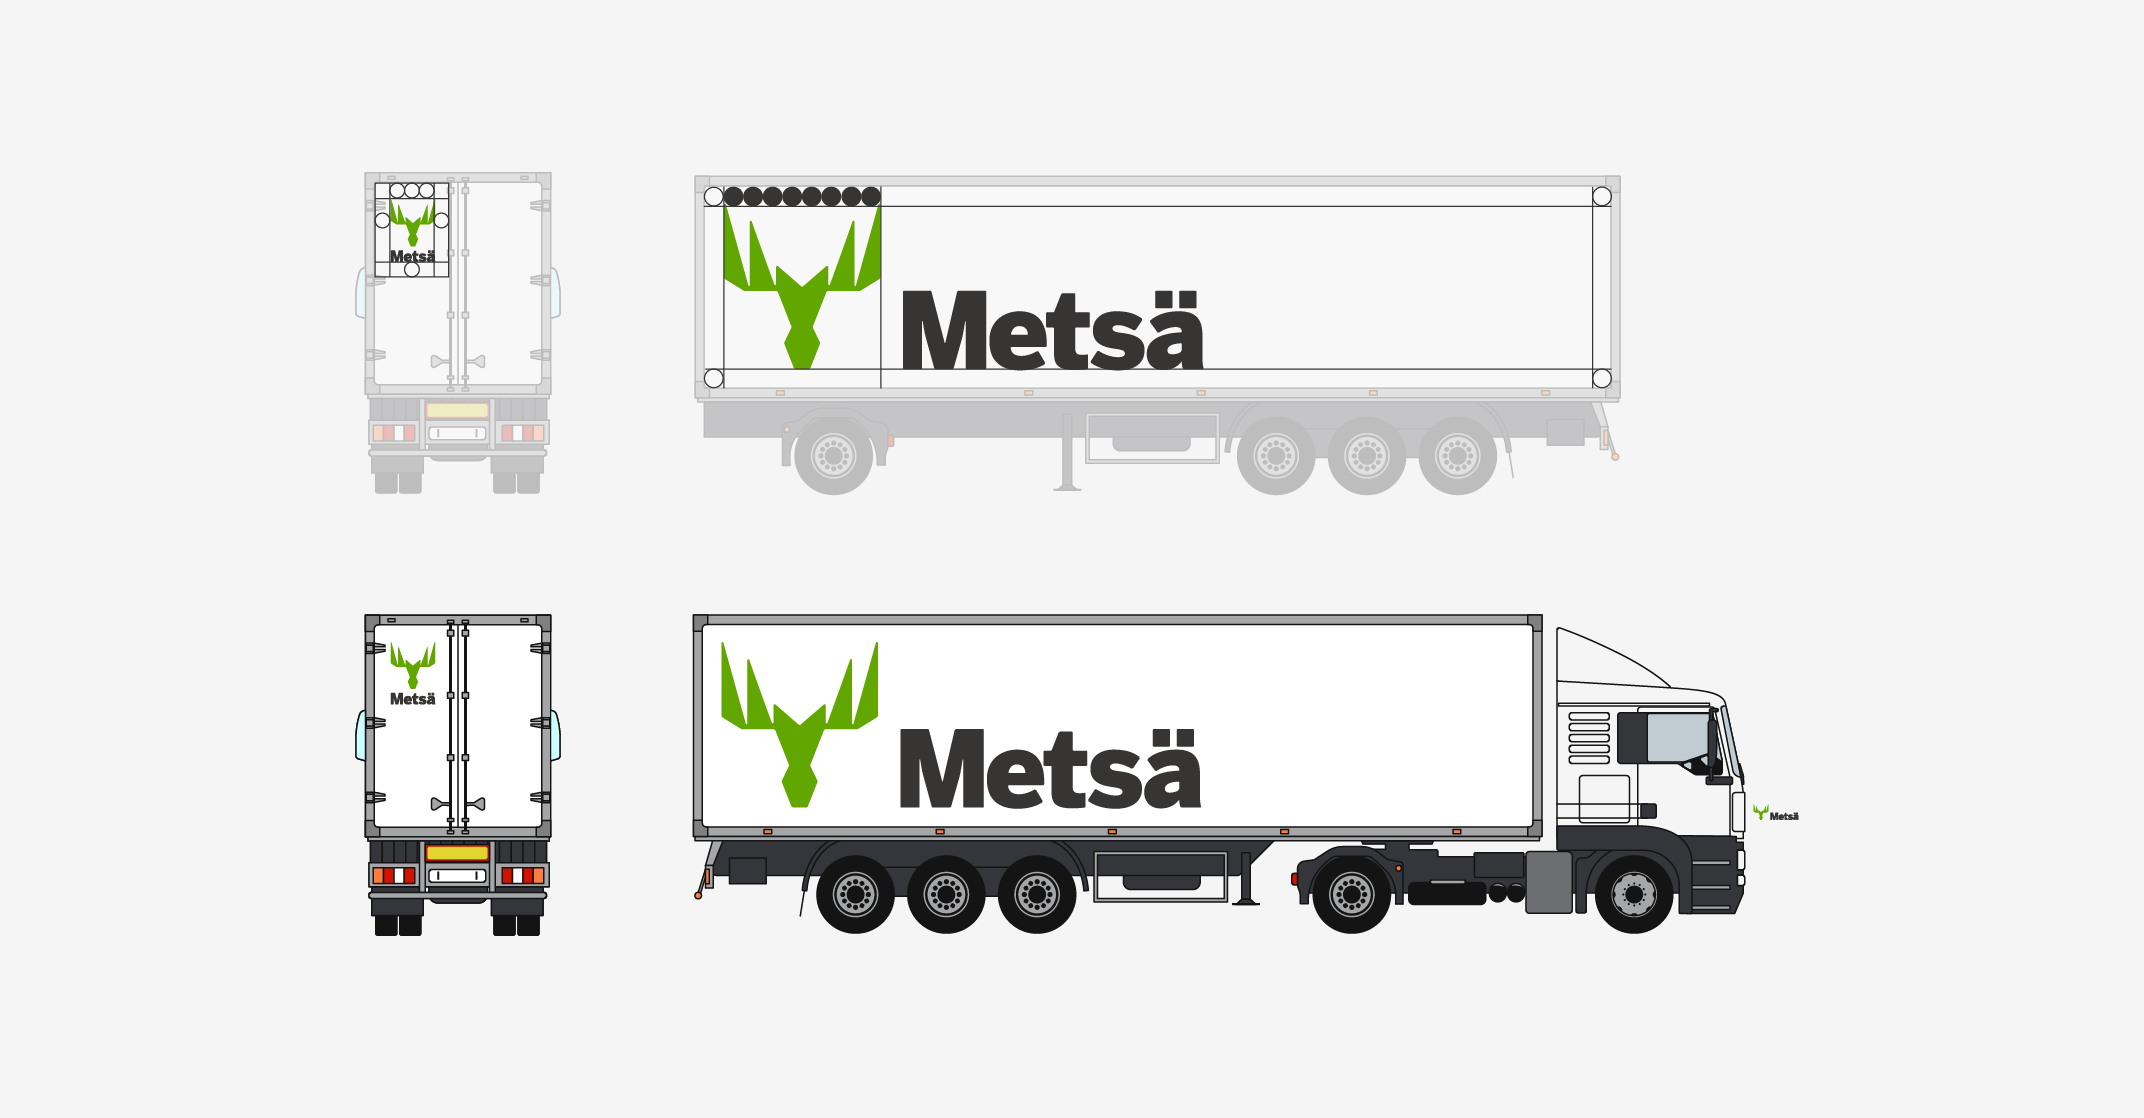 An example of the branding for trailer trucks.